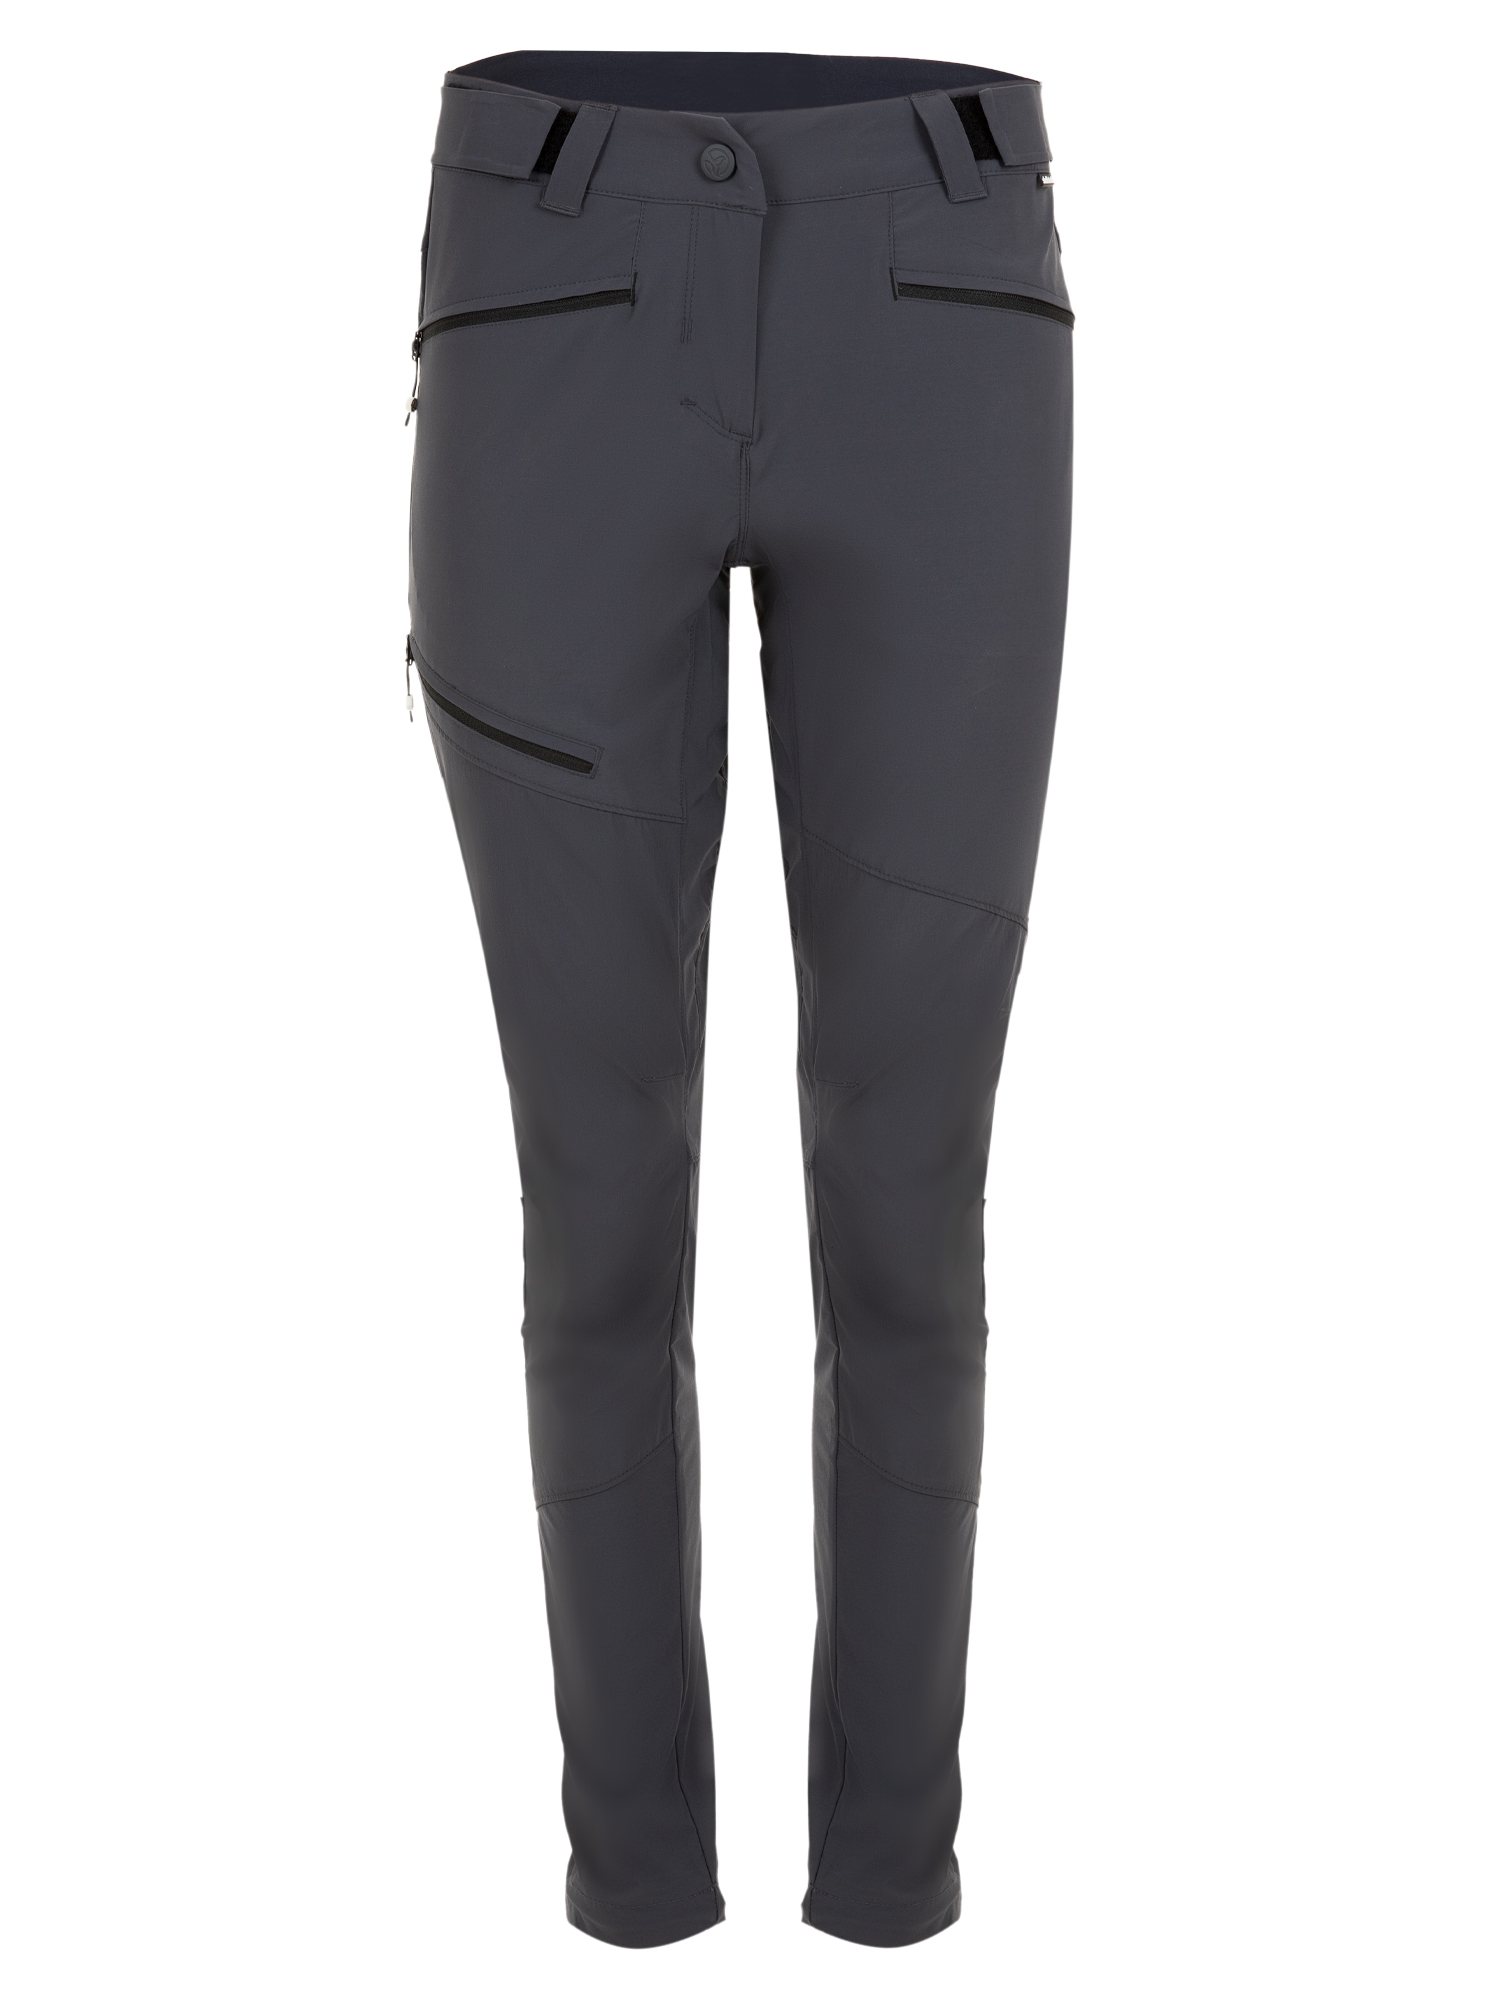 Спортивные брюки женские Ternua Rotar Pt W серые M